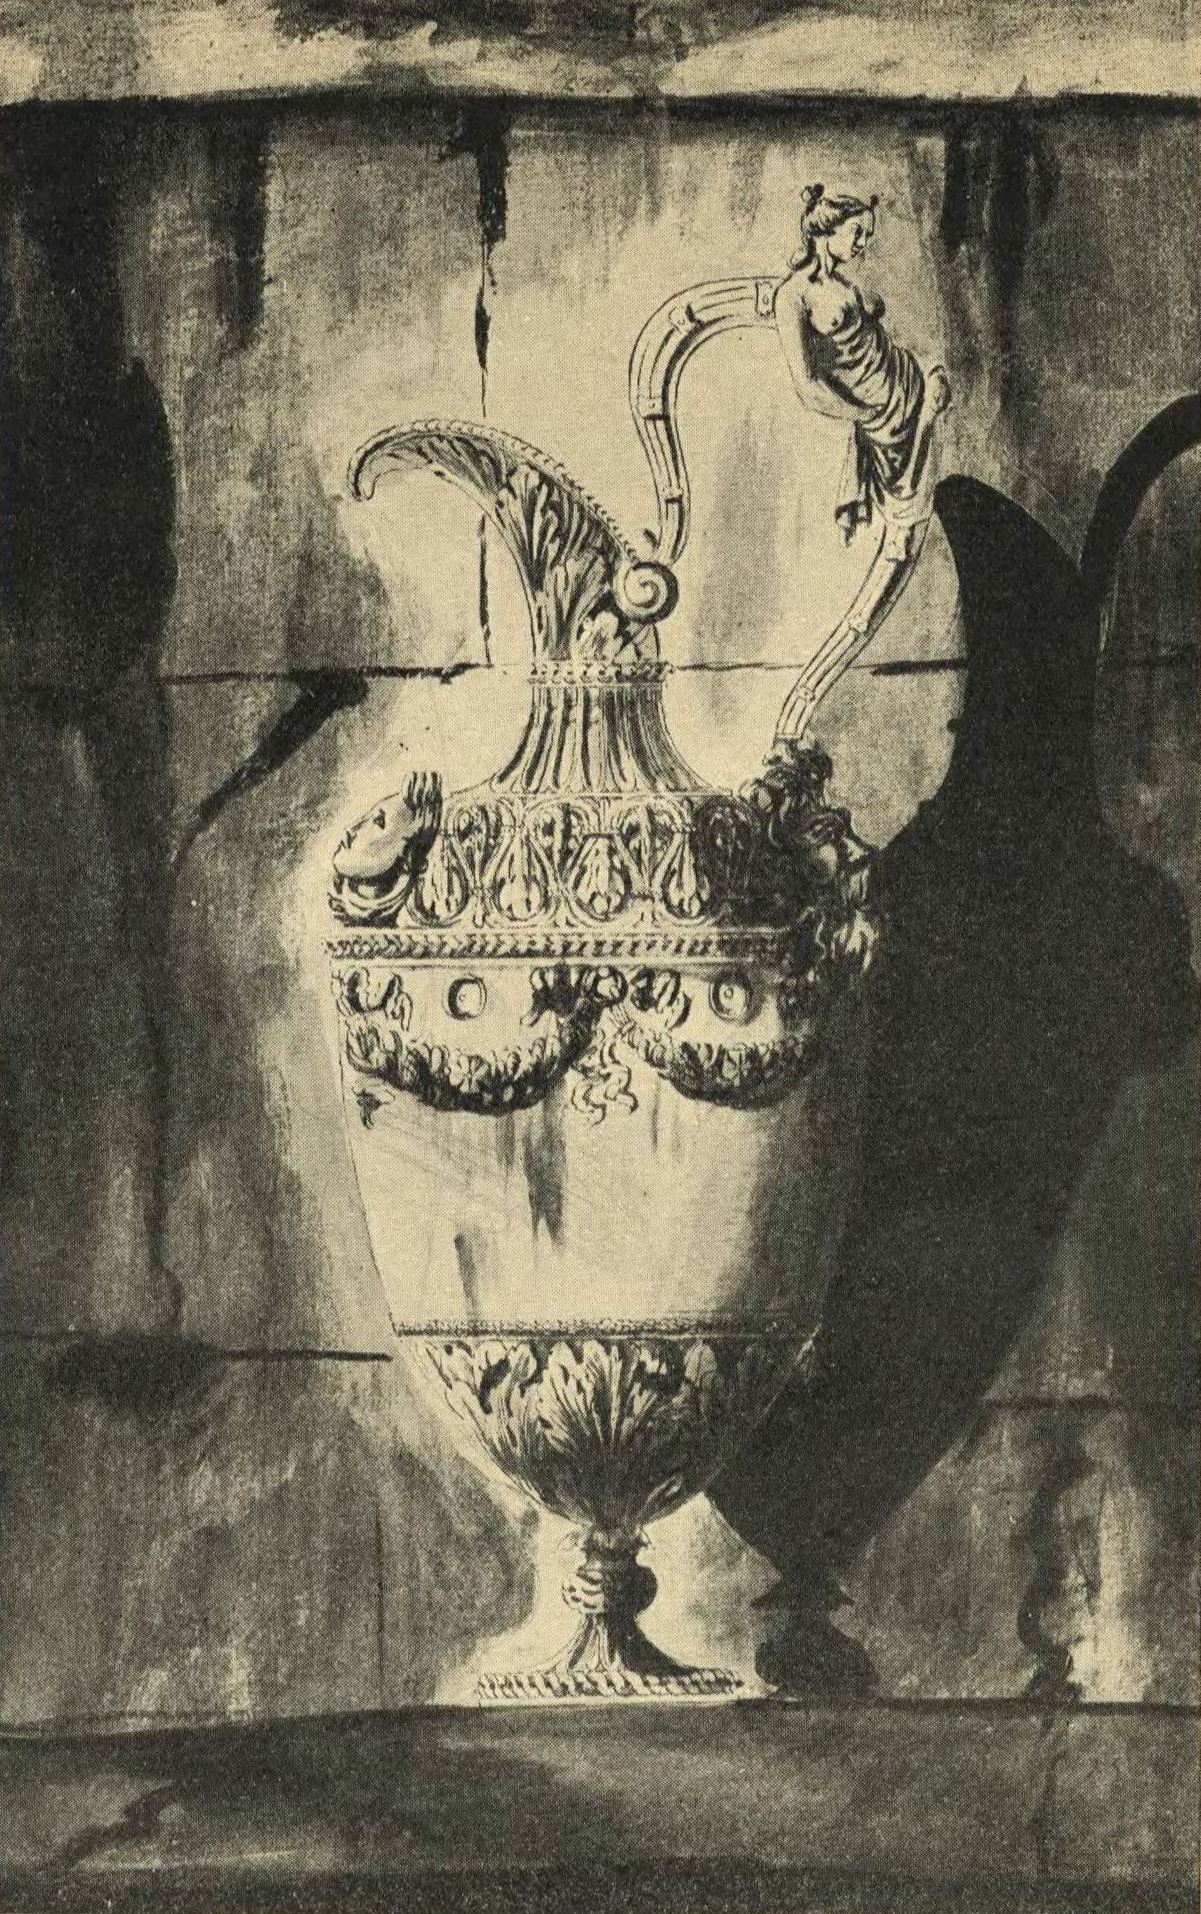 3. Рисунок серебряного кувшина в античном греко-римском стиле. Альбом Камерона 1764 г.